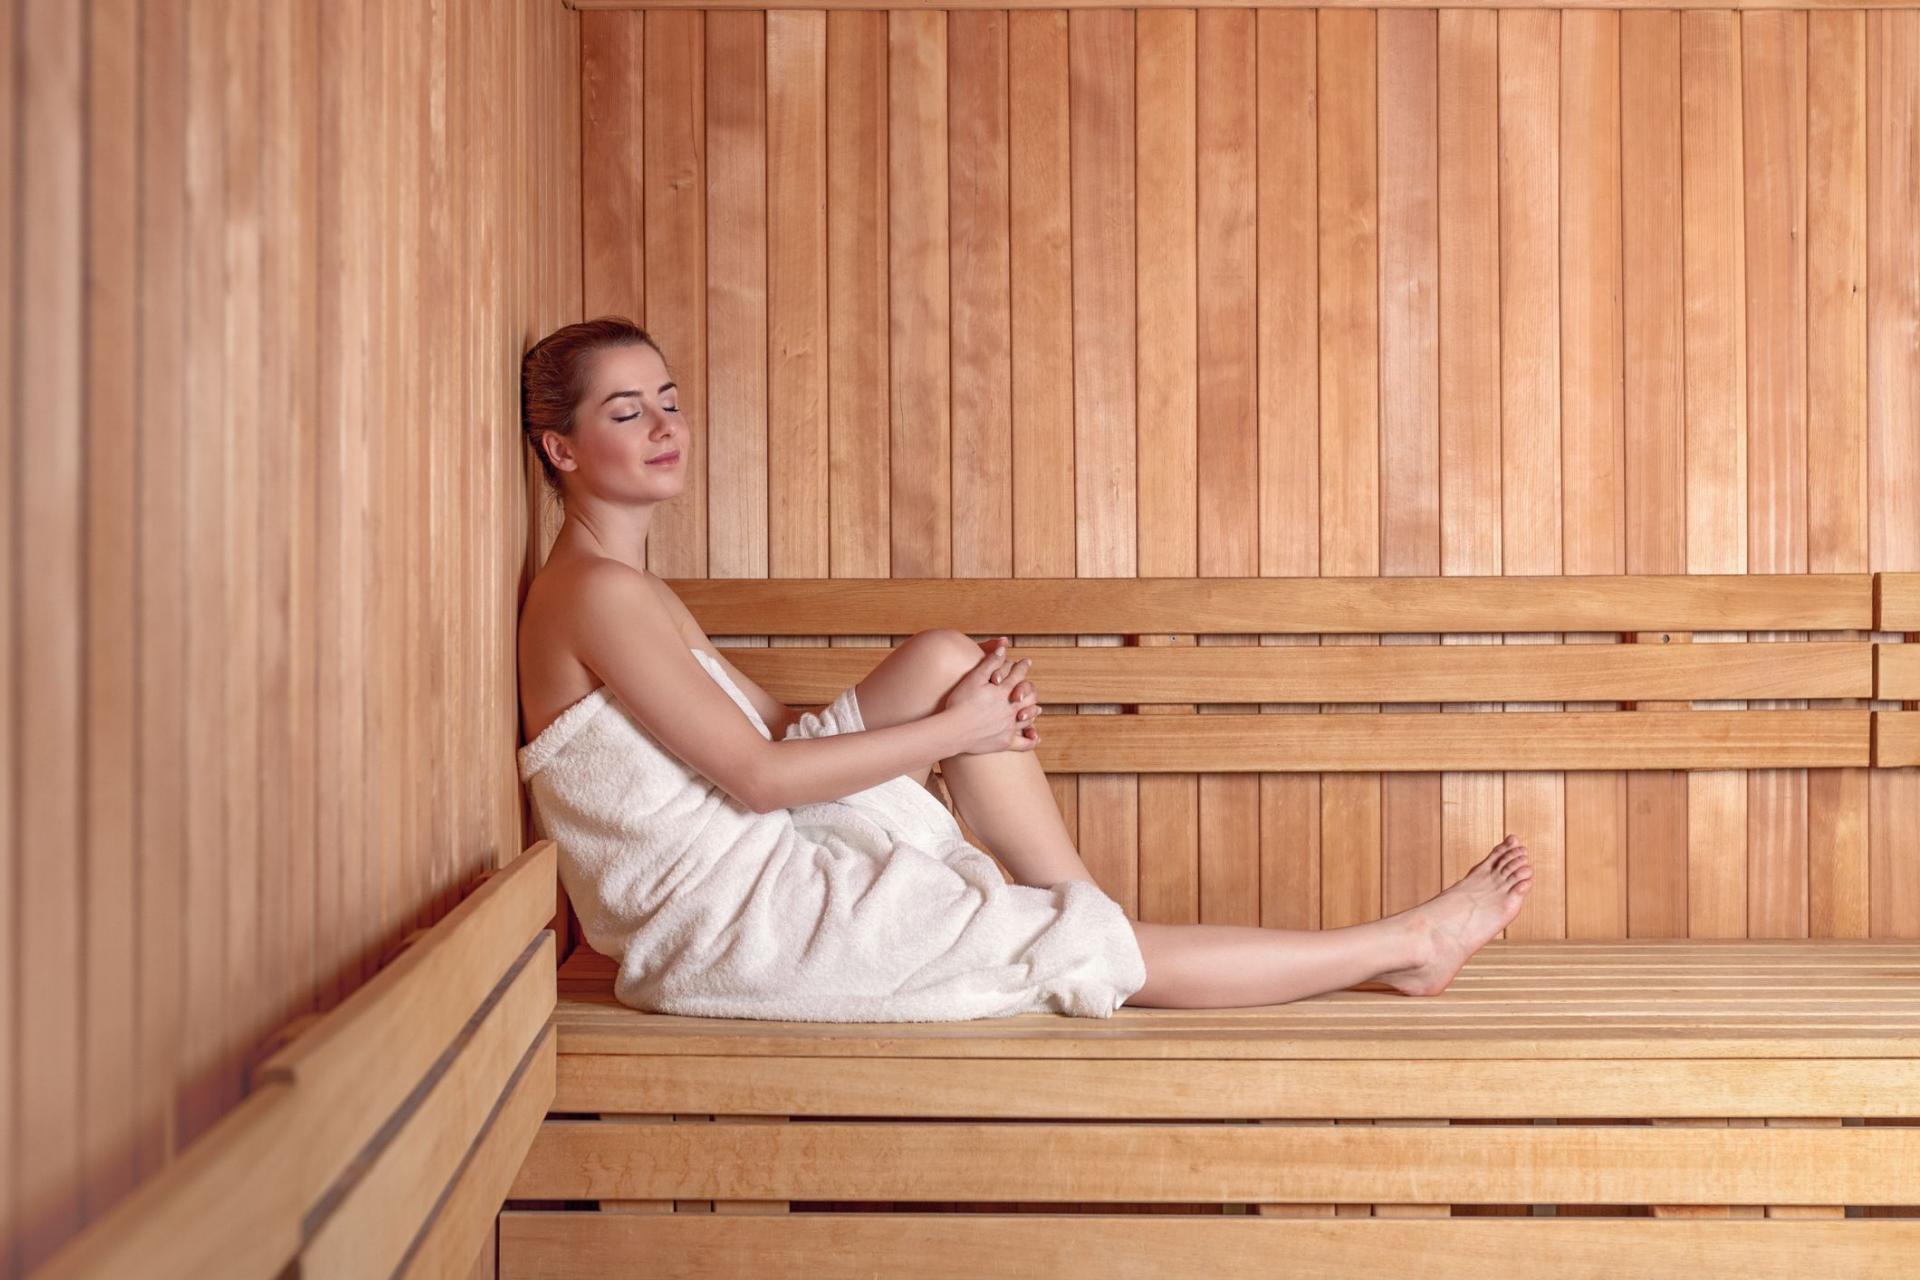 Le sauna reduirait les risques maladies cardiovasculaires